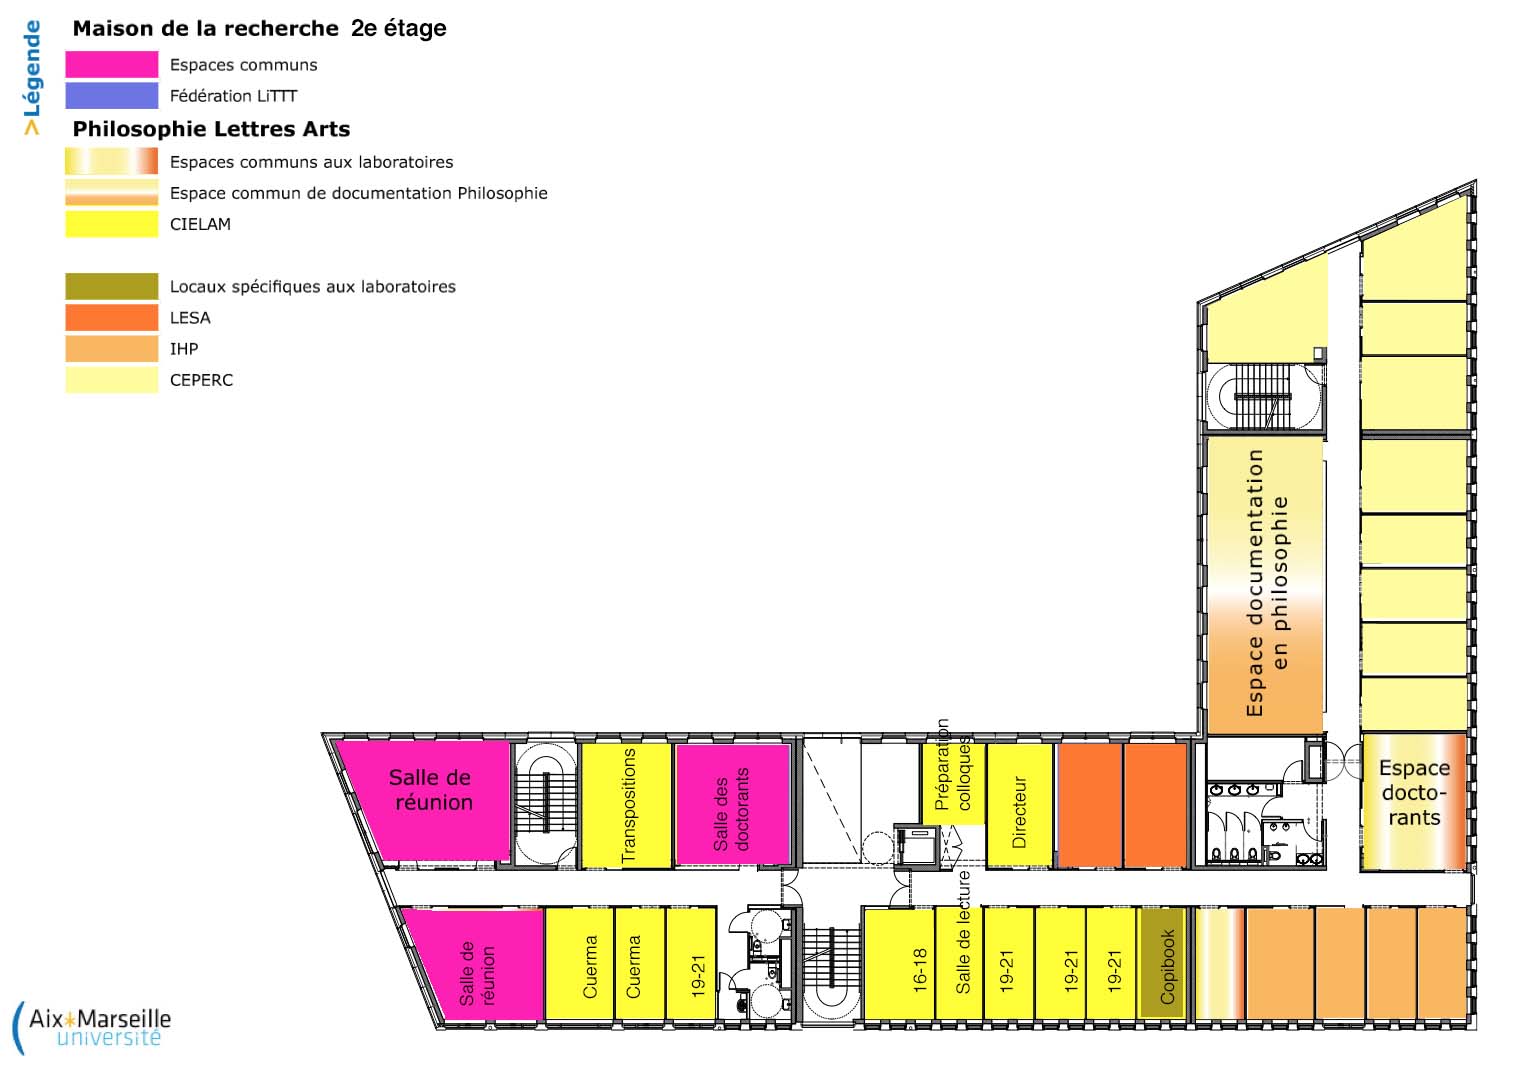 Plan du 2e étage de la Maison de la Recherche